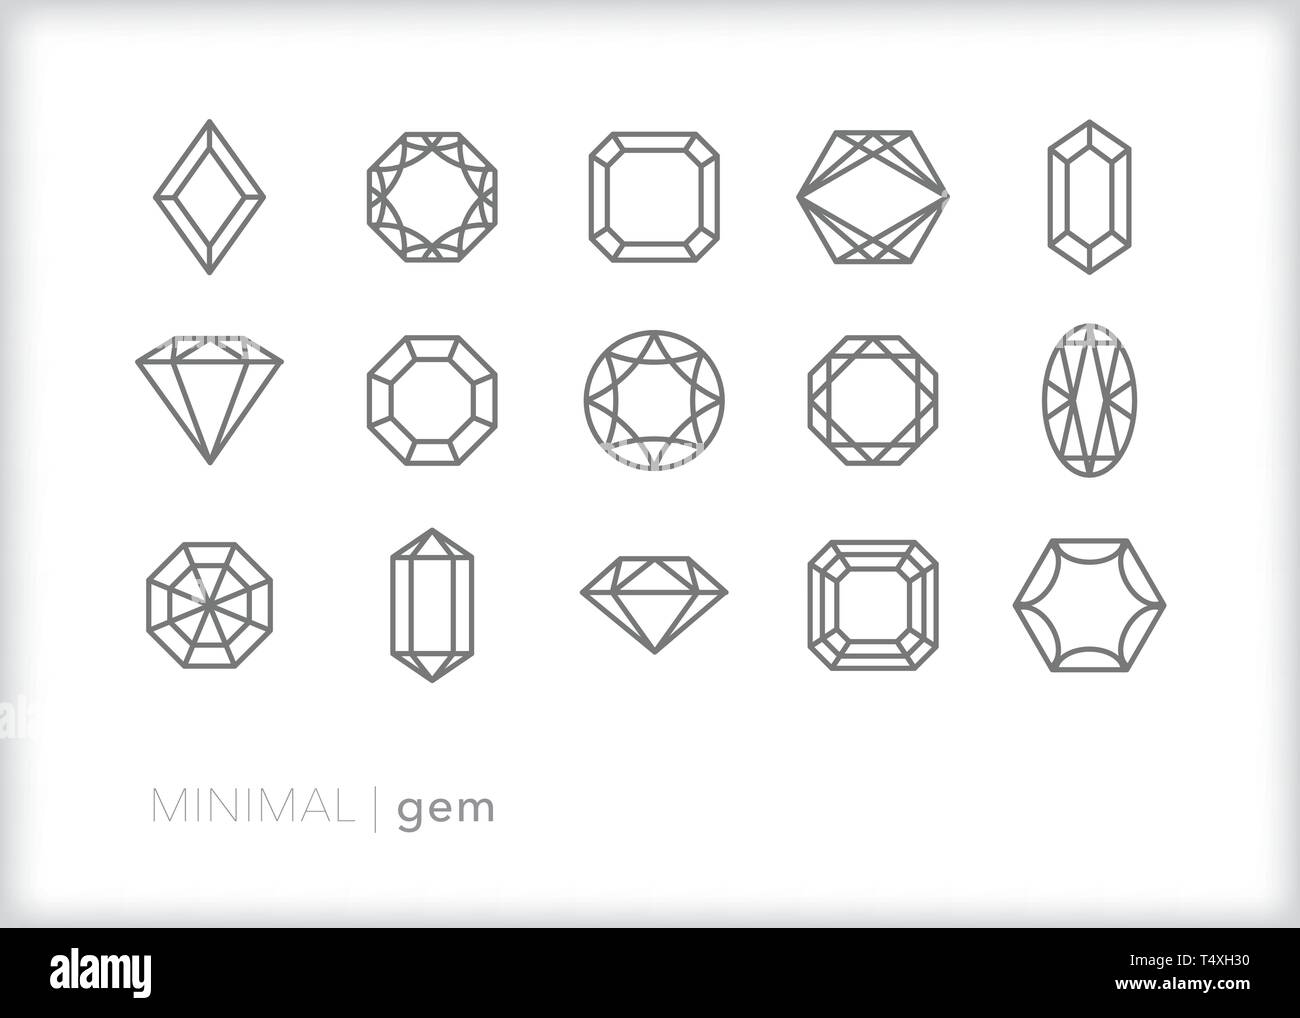 Set de 15 iconos de la línea de joyas y gemas de diferentes cortes de diamantes y piedras preciosas para joyas Ilustración del Vector